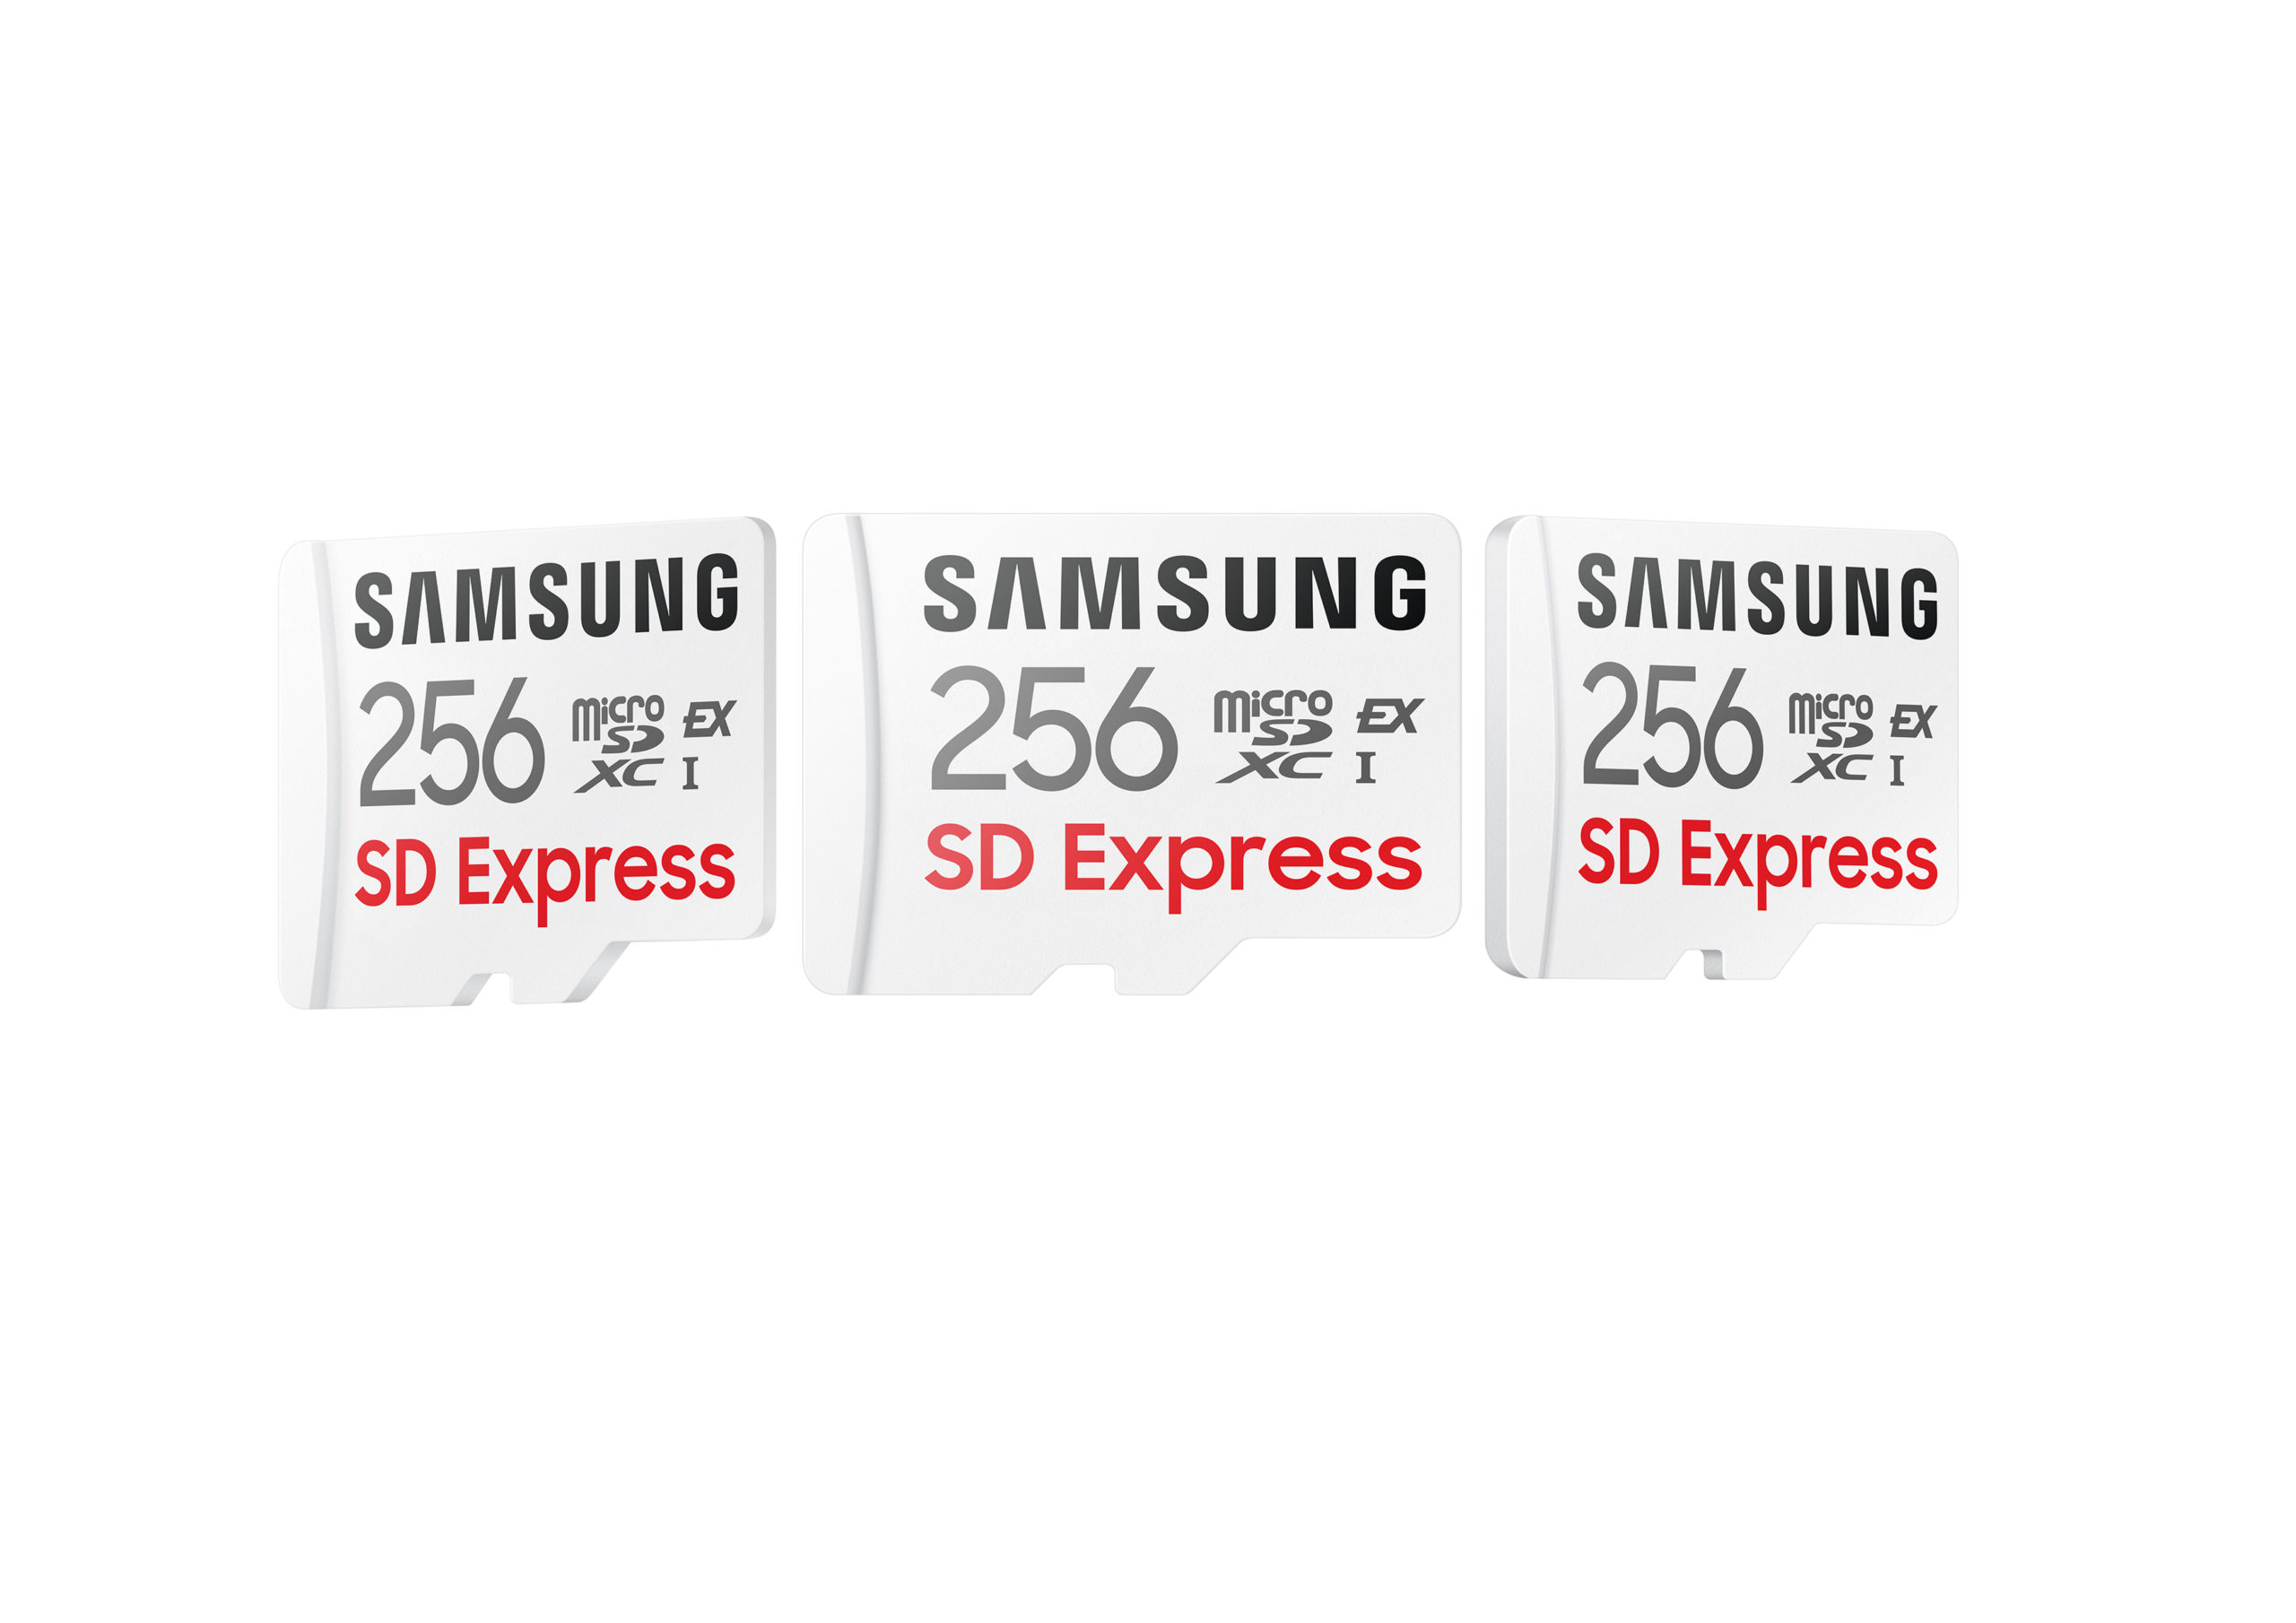 Nowe karty microSD Samsung zapewniają wysoką wydajność i pojemność z myślą o nowej erze komputerów mobilnych i urządzeń ze sztuczną inteligencją